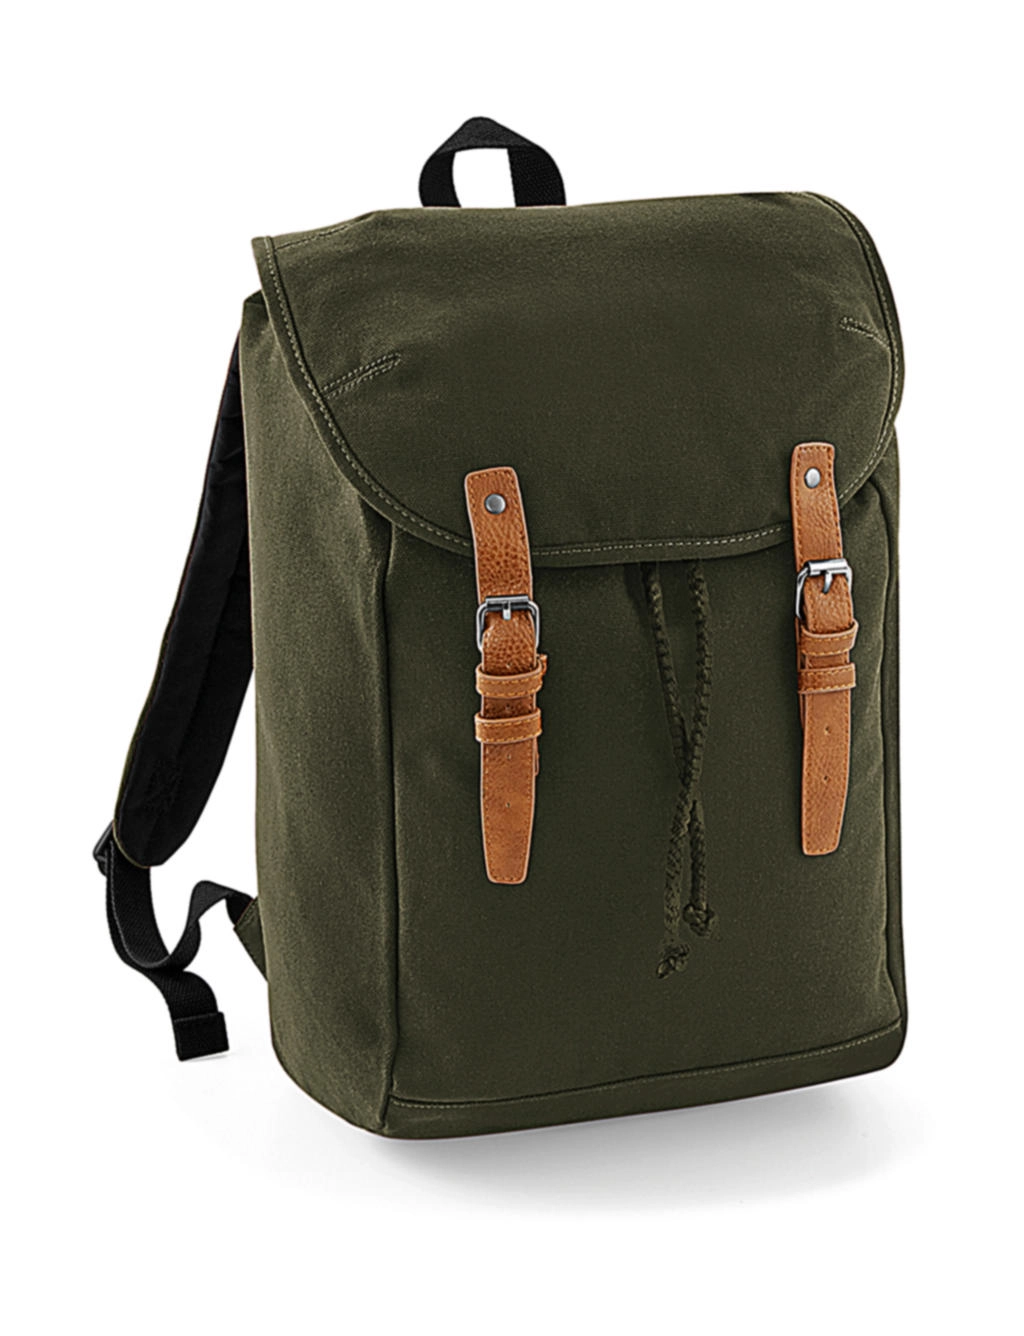 Vintage Backpack zum Besticken und Bedrucken in der Farbe Military Green mit Ihren Logo, Schriftzug oder Motiv.